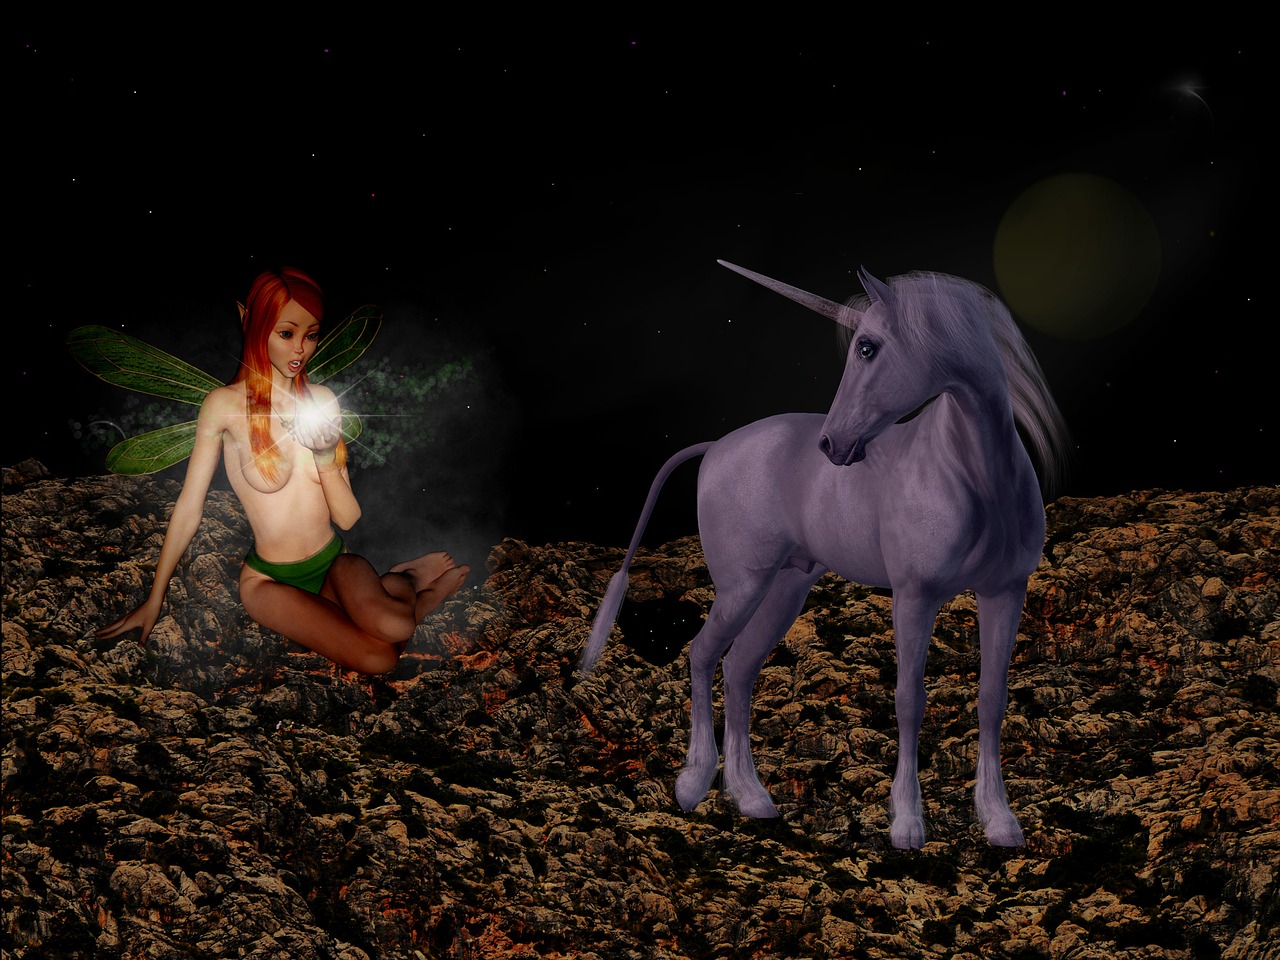 unicorn mythical creatures fantasy free photo